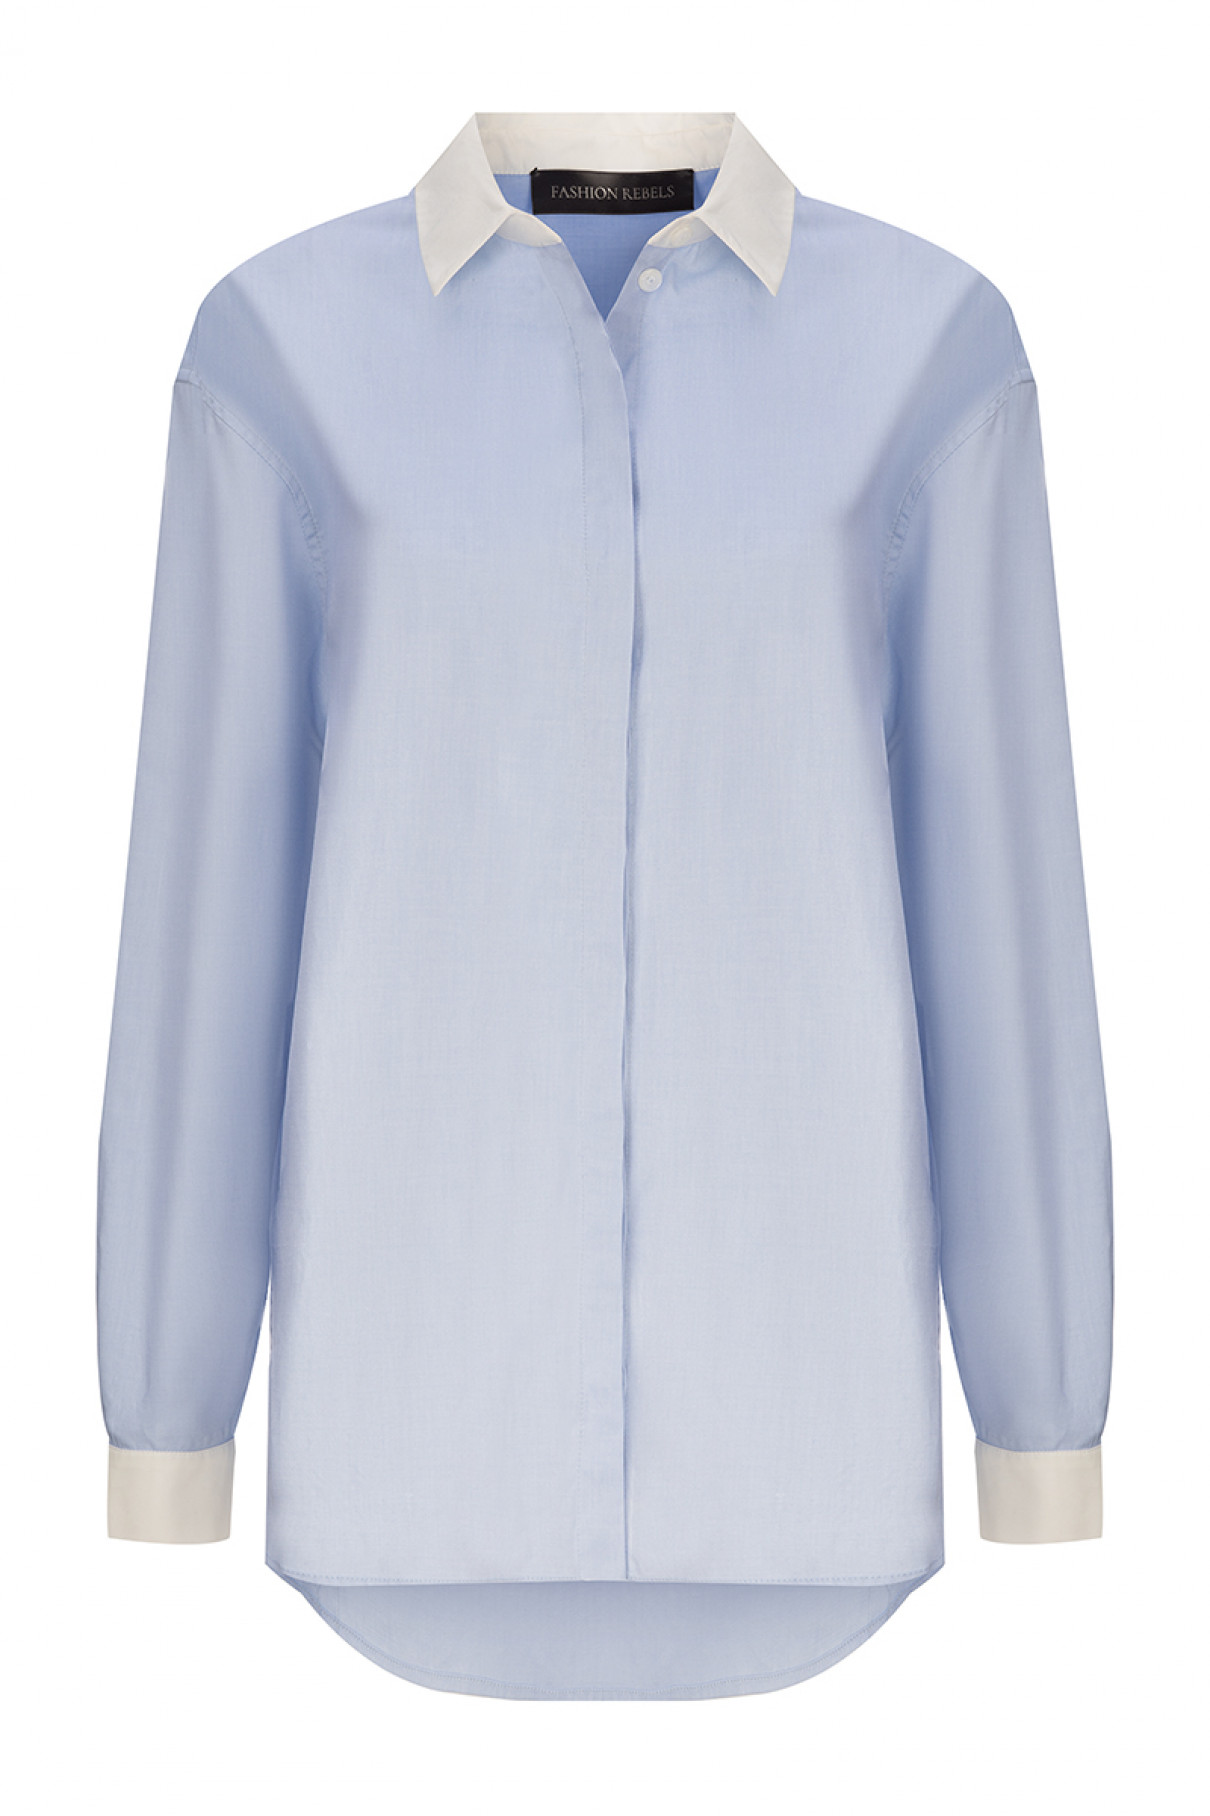 Рубашка с воротником и манжетами , Голубой, арт. FR2203FWBLU купить в интернет-магазине